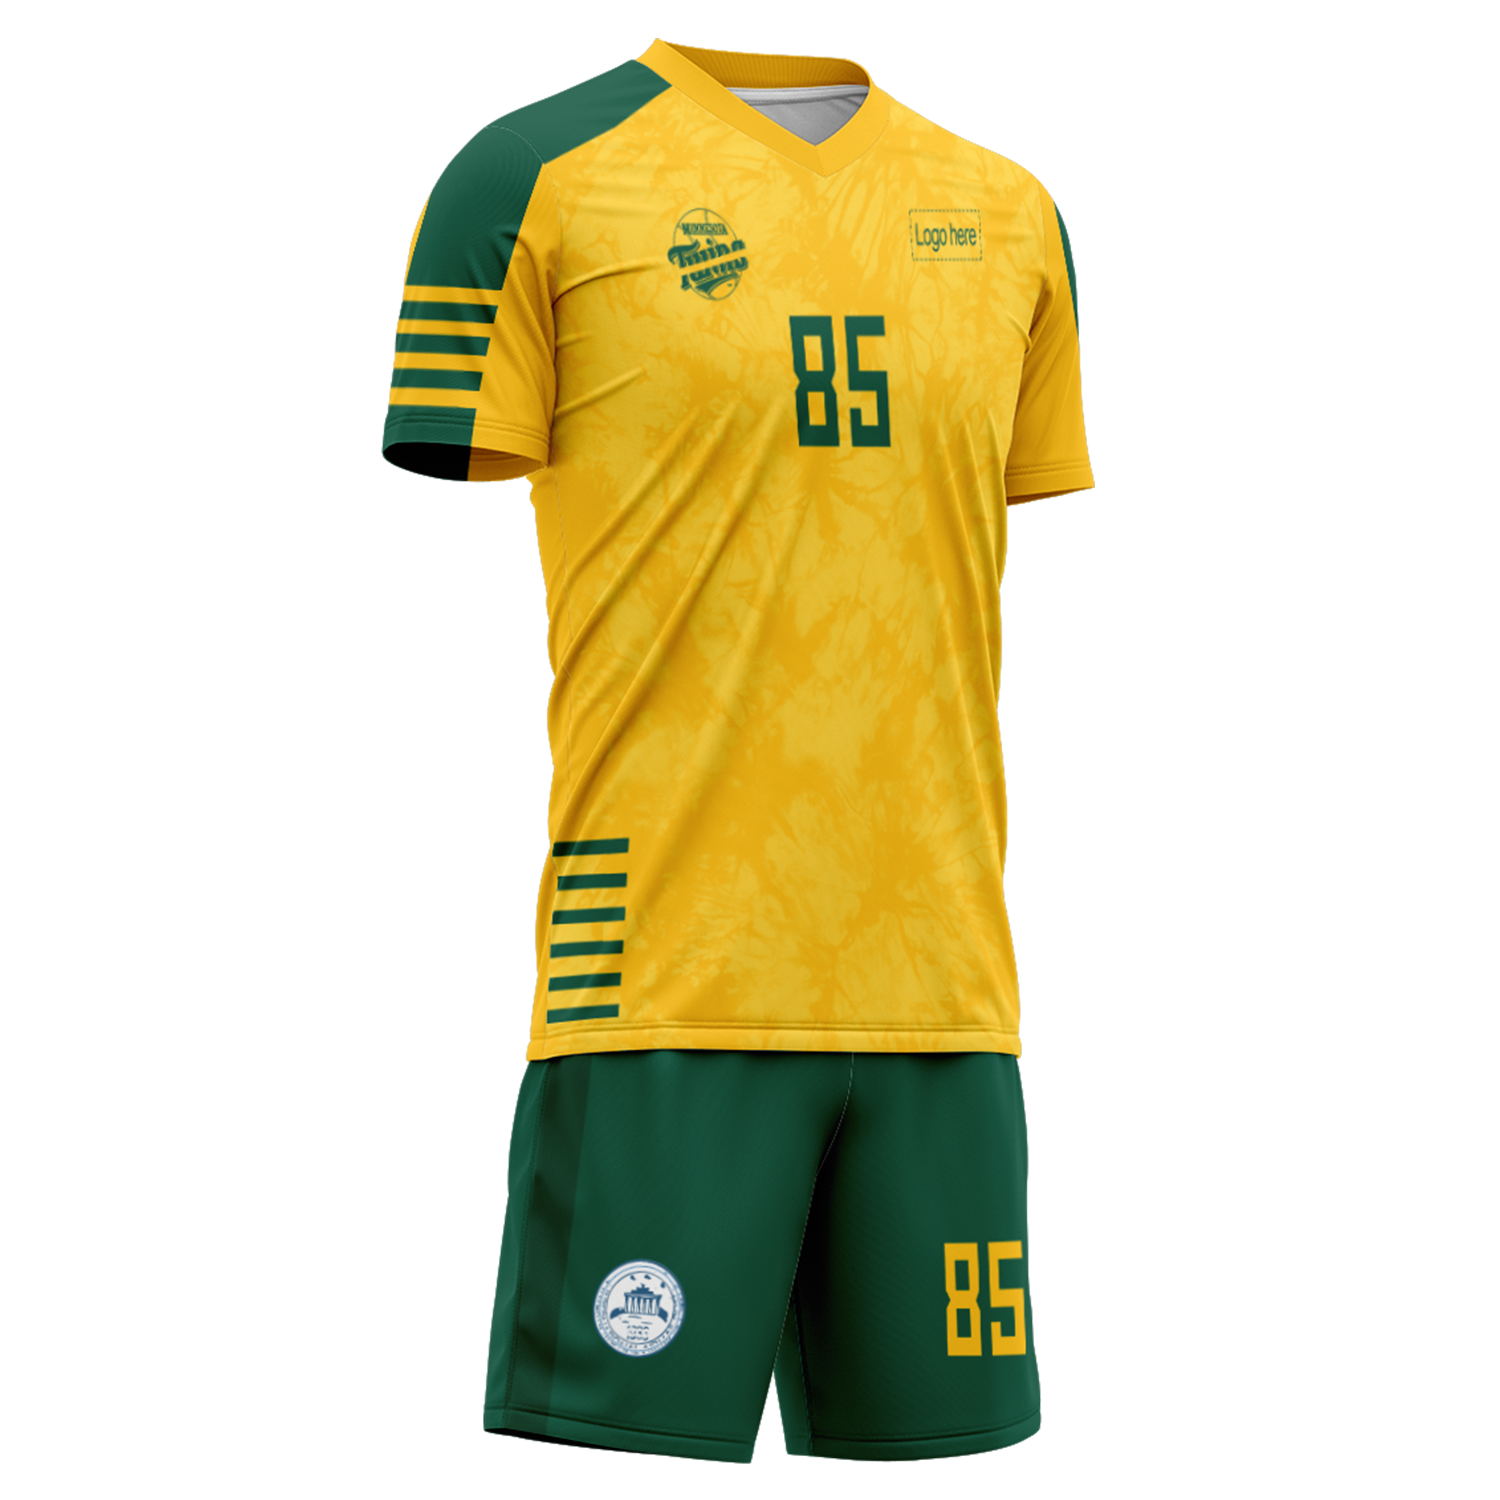 Trajes de fútbol personalizados del equipo de Australia de la Copa Mundial 2022